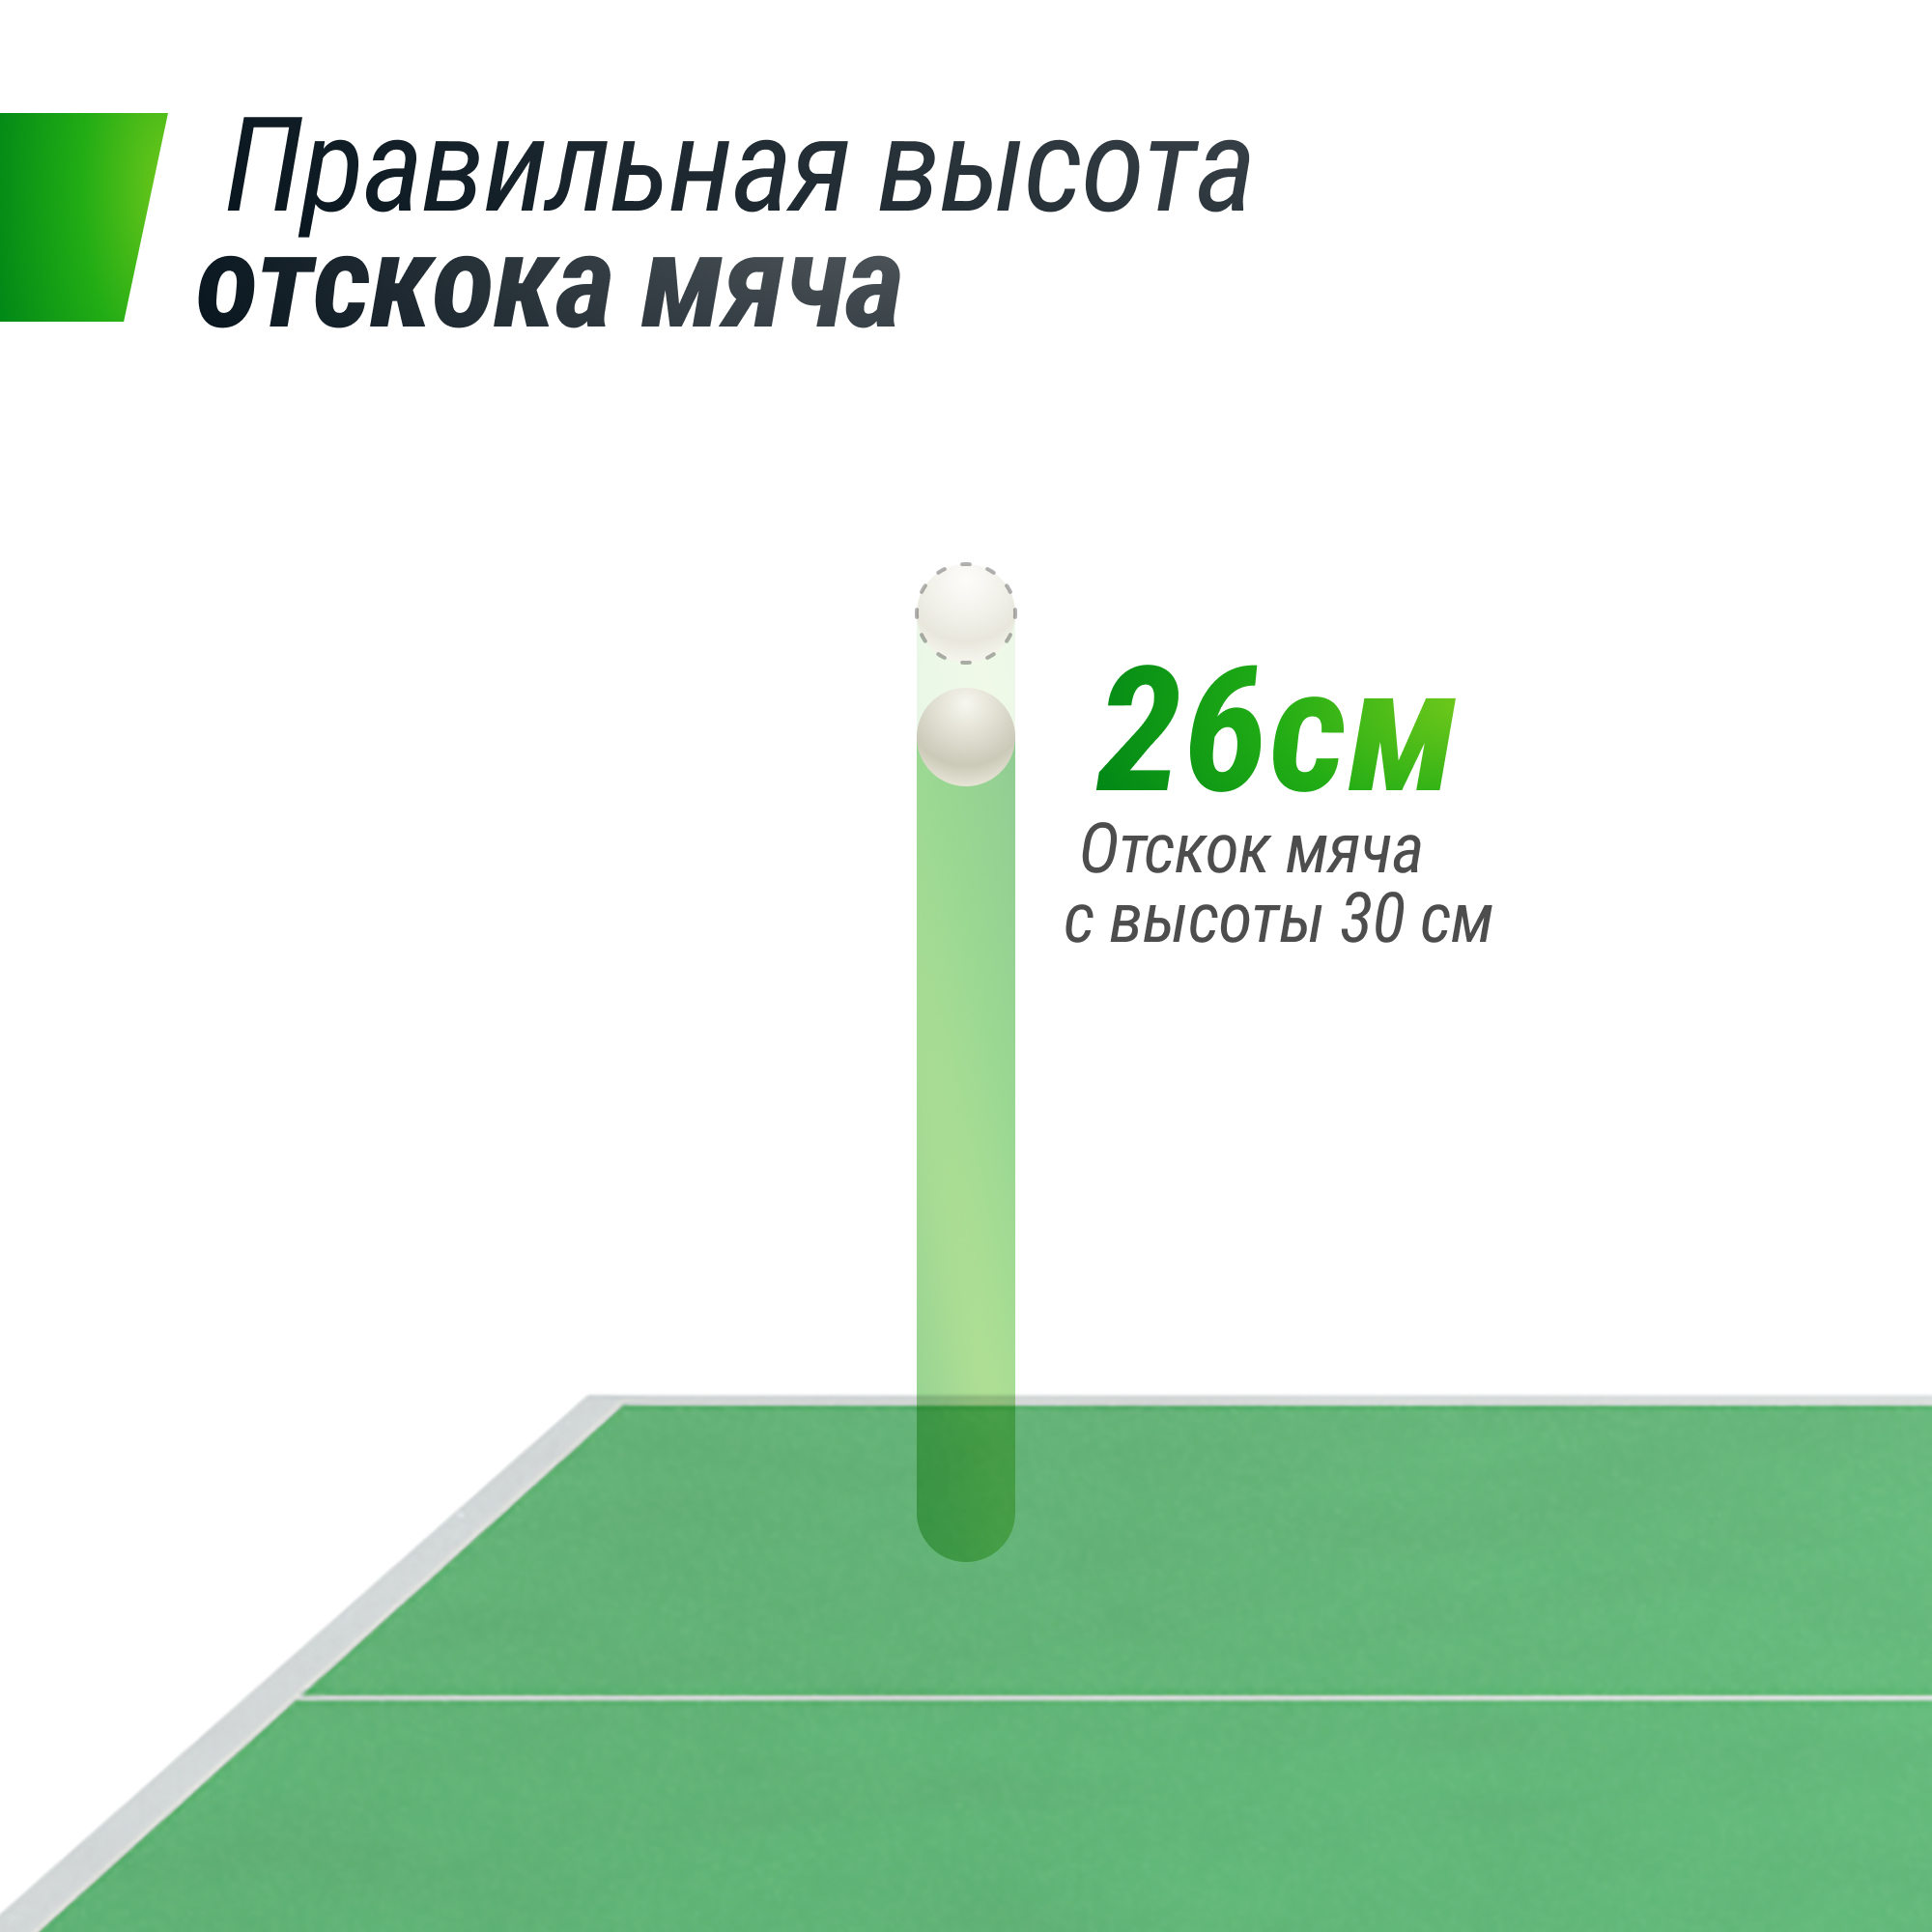 Фото профессиональный теннисный стол unix line 25 mm mdf (green)